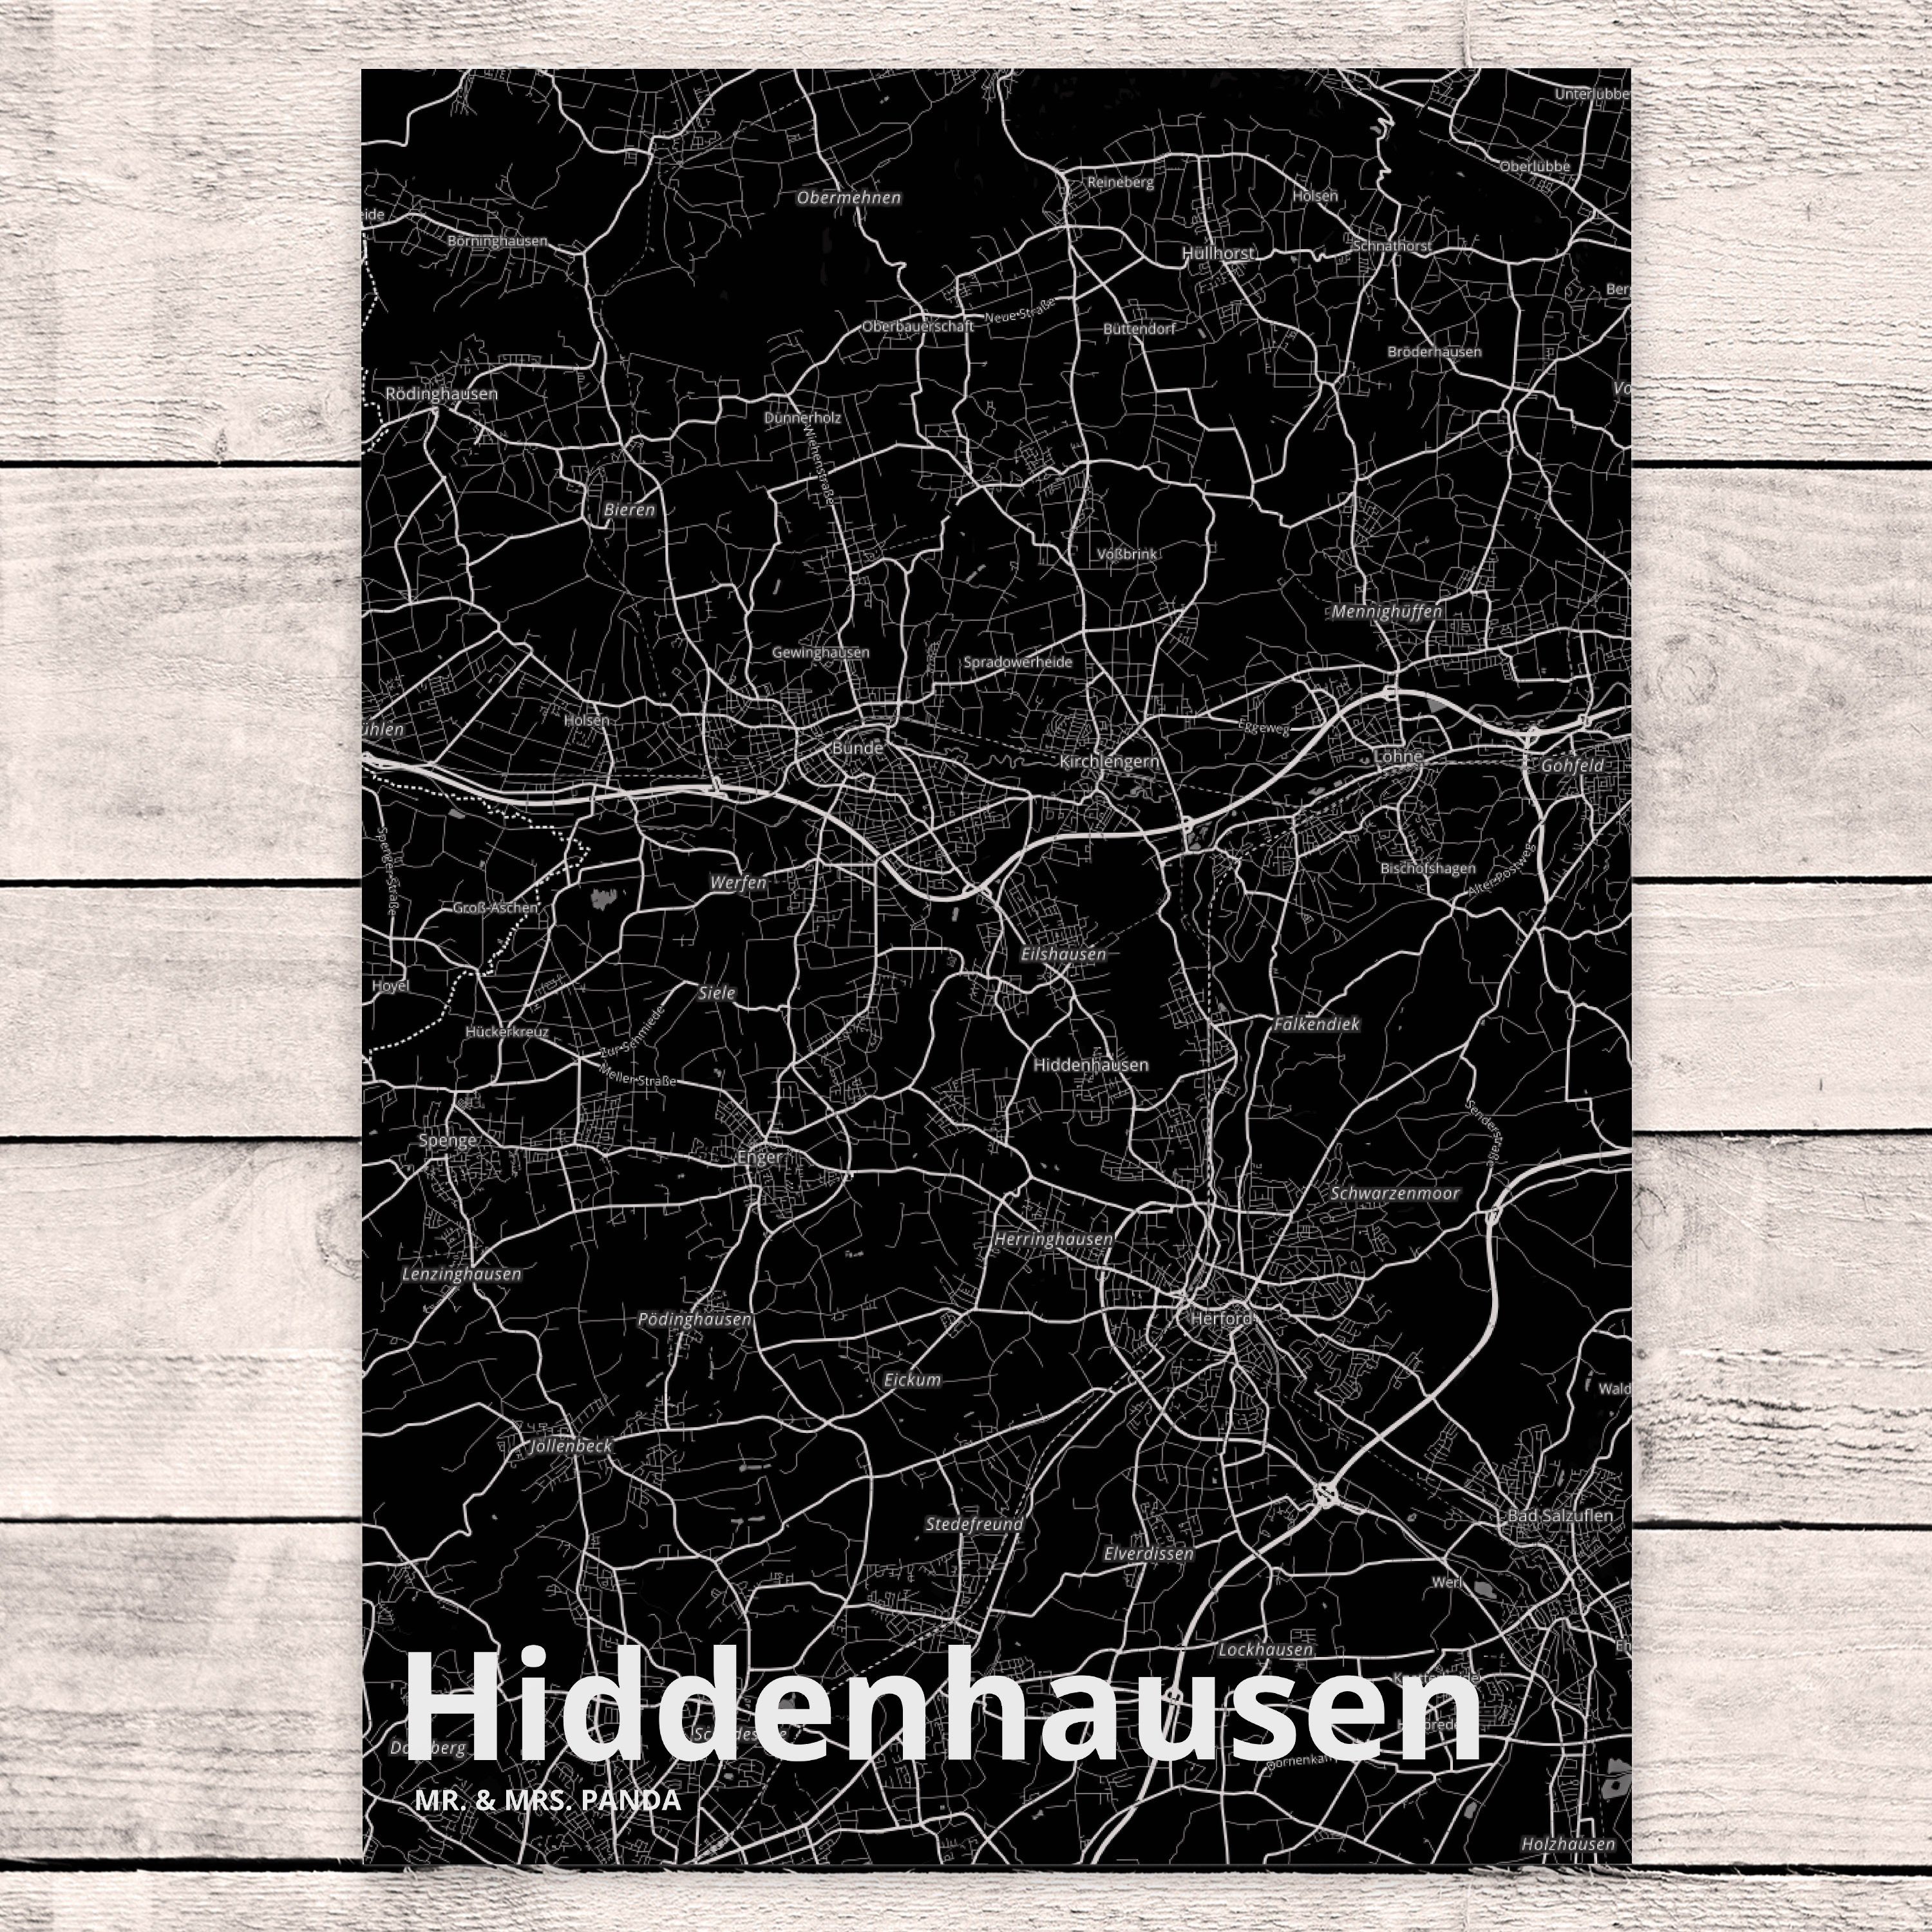 Mr. & Mrs. Panda Einladungskarte Ort, - Stadt, Hiddenhausen Städte, Postkarte Geschenk, Karte